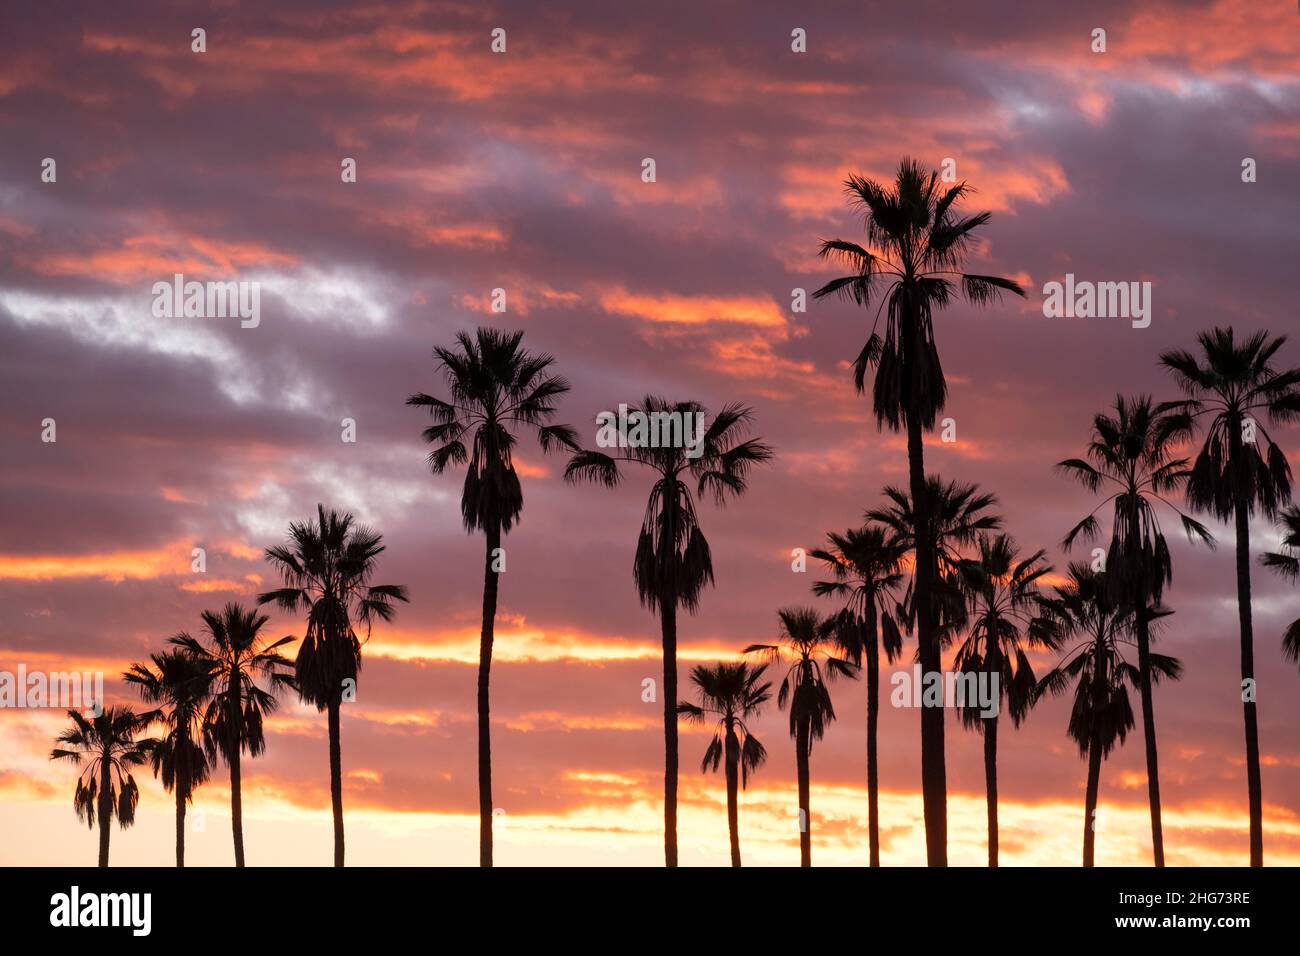 Silhouette einer Palmenreihe bei Sonnenuntergang mit einem rosa und orangefarbenen Himmel Stockfoto